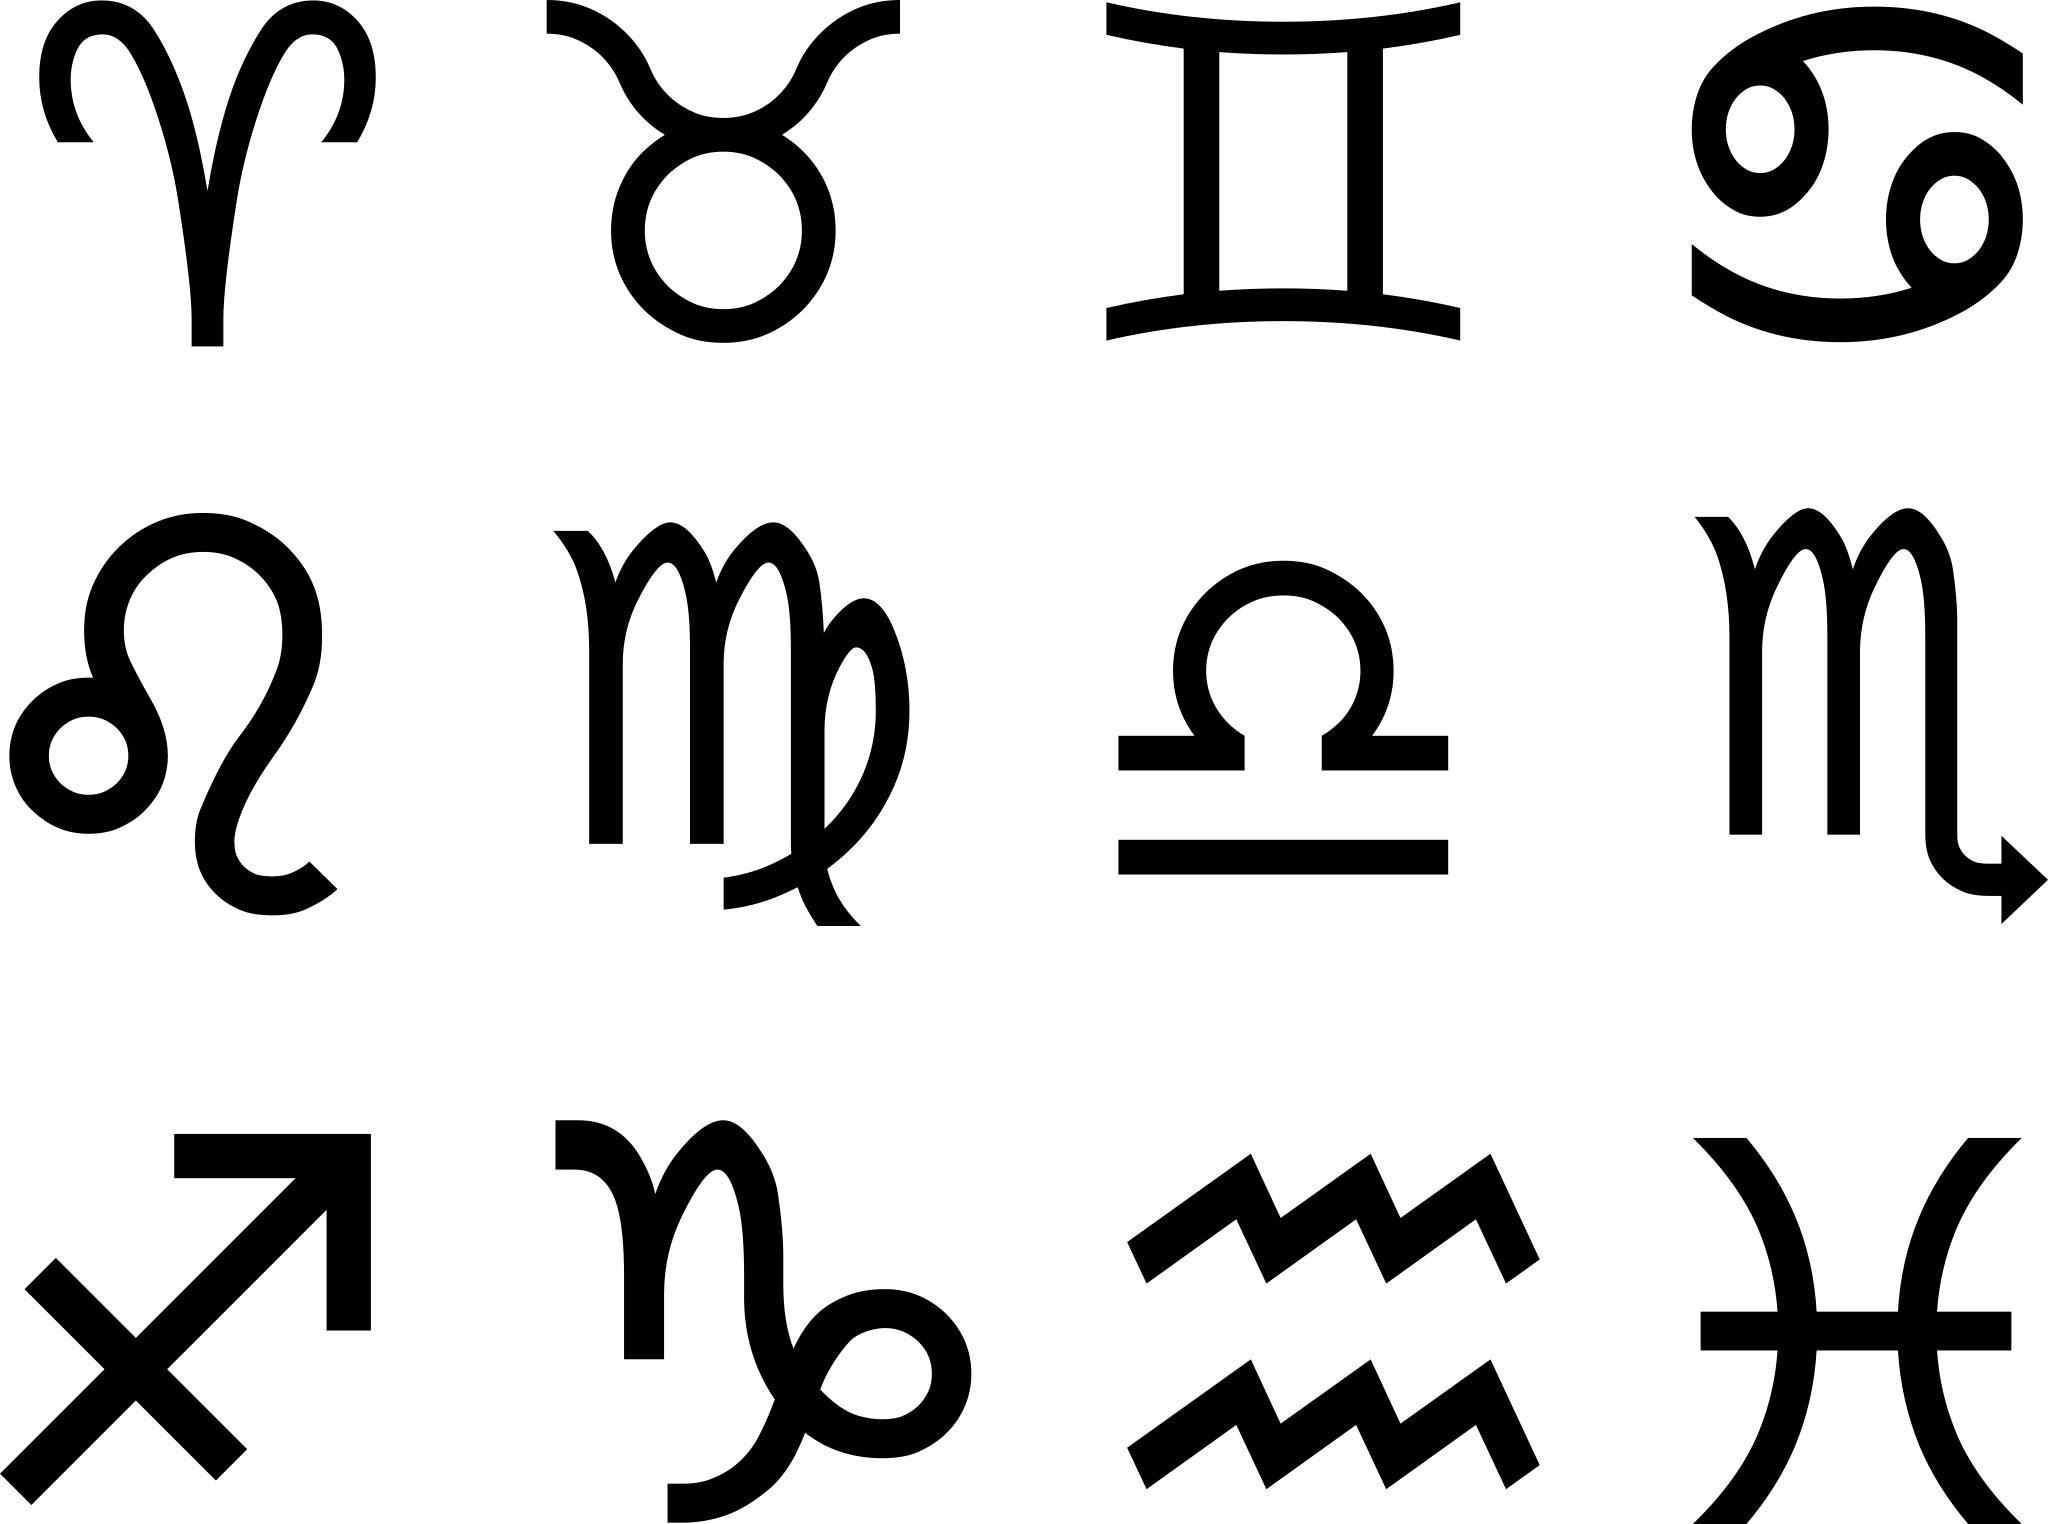 Как выглядят знаки зодиака символы